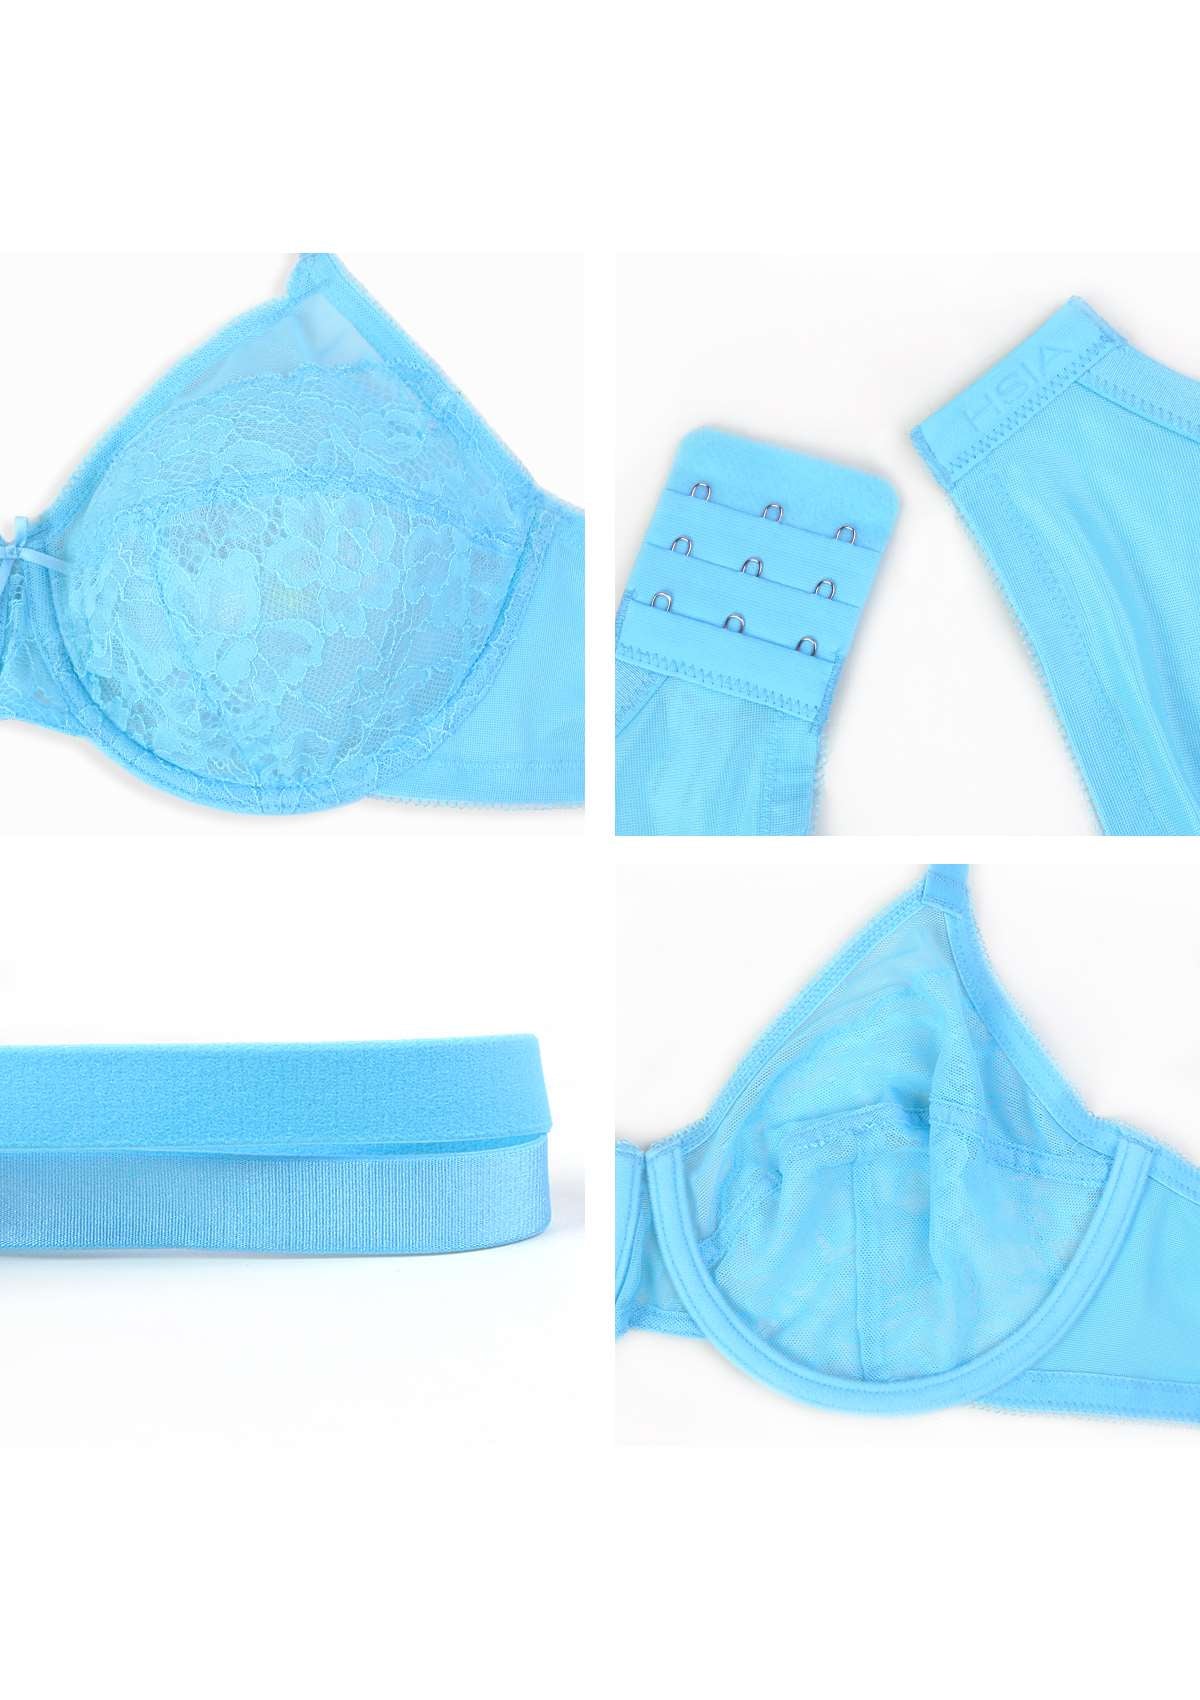 HSIA Enchante Minimizer Lace Bra: Full Support For Heavy Breasts - Capri Blue / 36 / DD/E